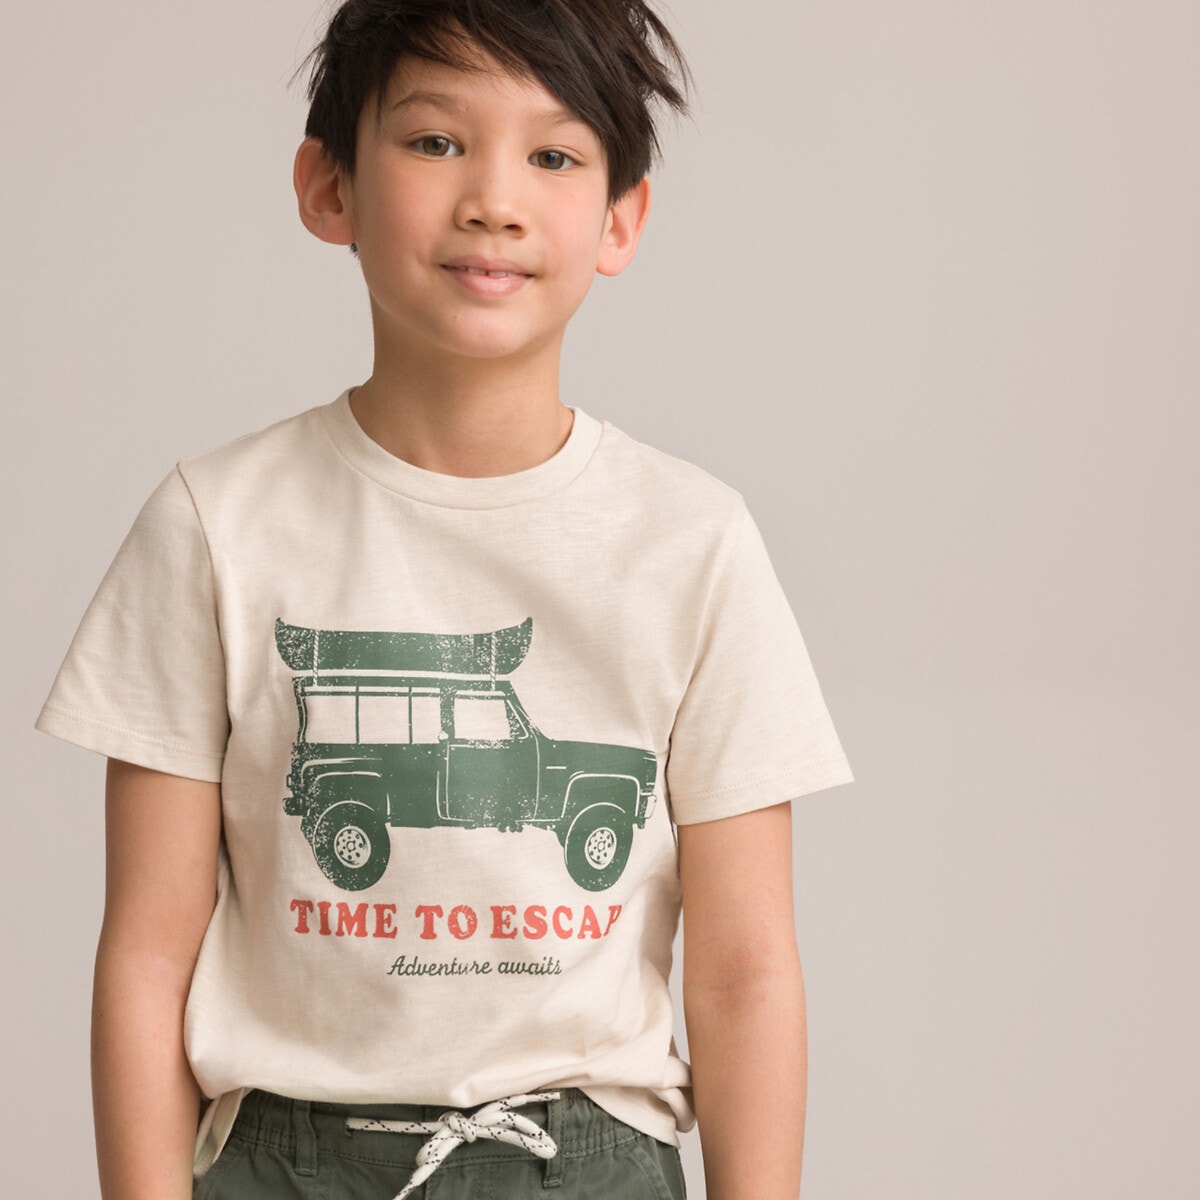 Μόδα > Παιδικά > Αγόρι > T-shirt, πόλο > Κοντά μανίκια Κοντομάνικο T-shirt με στάμπα μπροστά